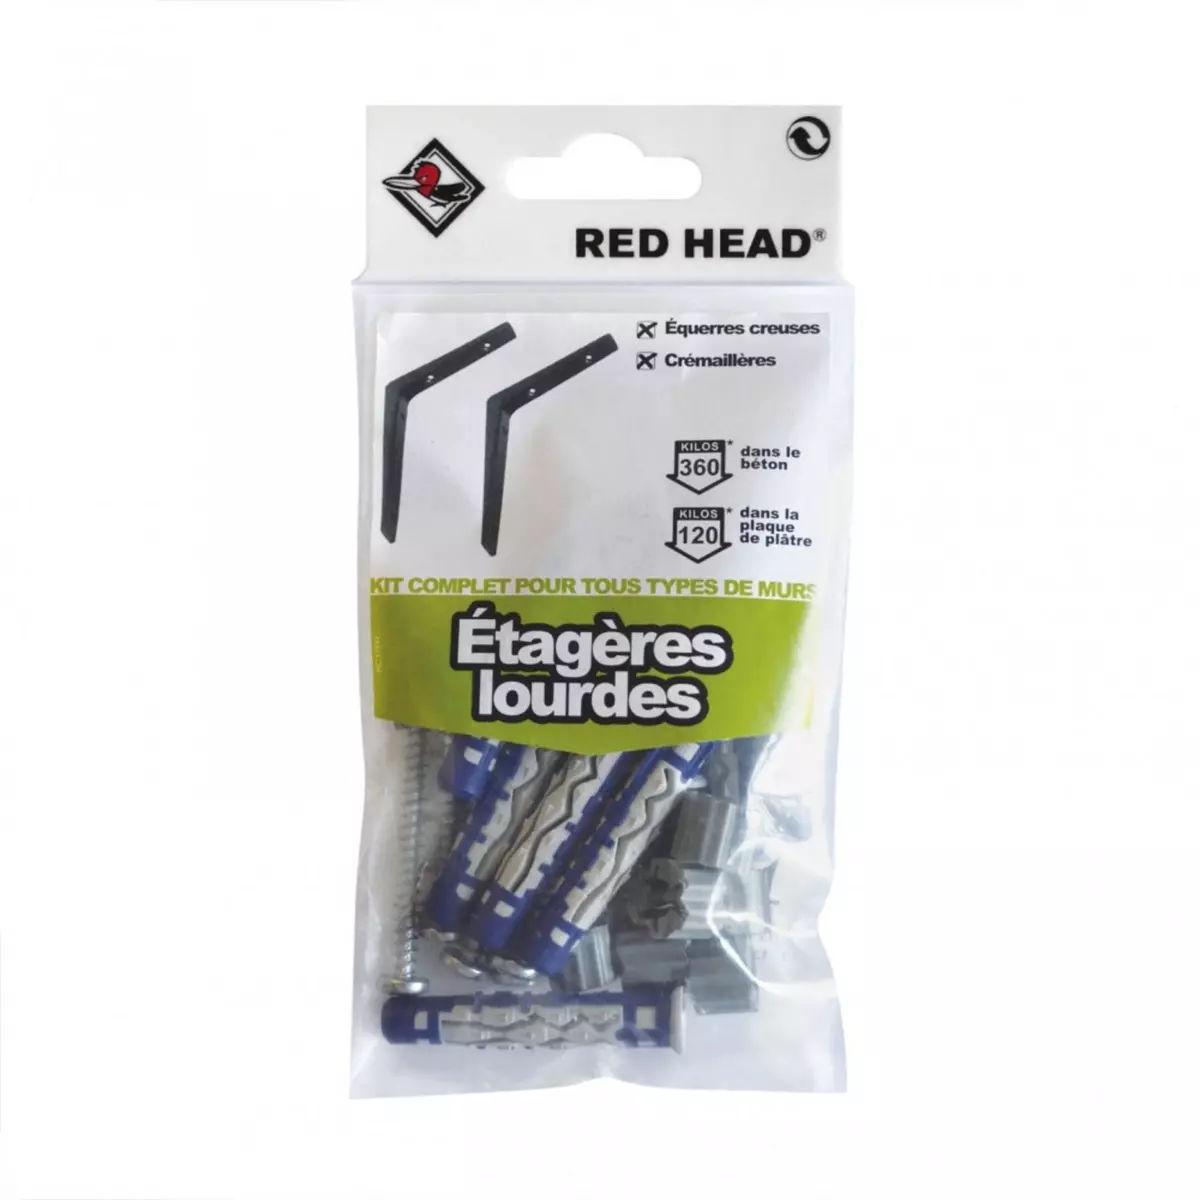 RED HEAD kit chevilles à verrouillage de forme etagère lourde RED HEAD, Diam.8 x L.50 mm